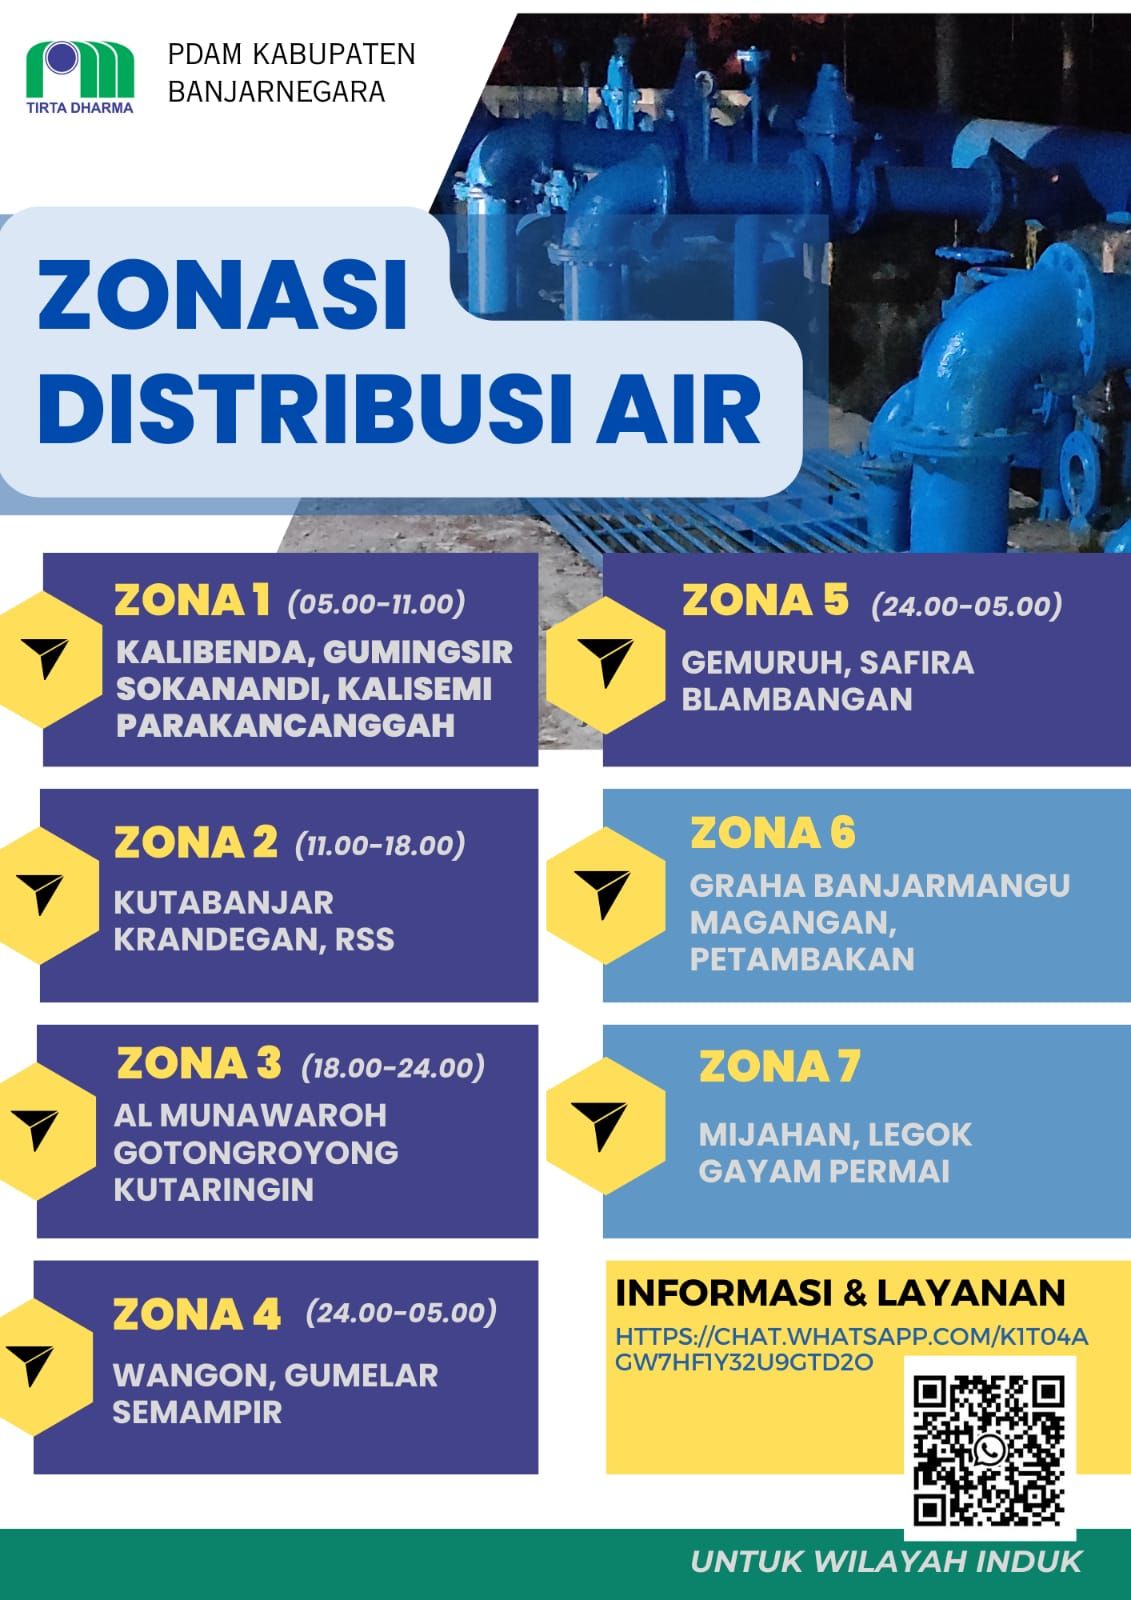 Zonasi Distribusi Air PDAM Banjarnegara